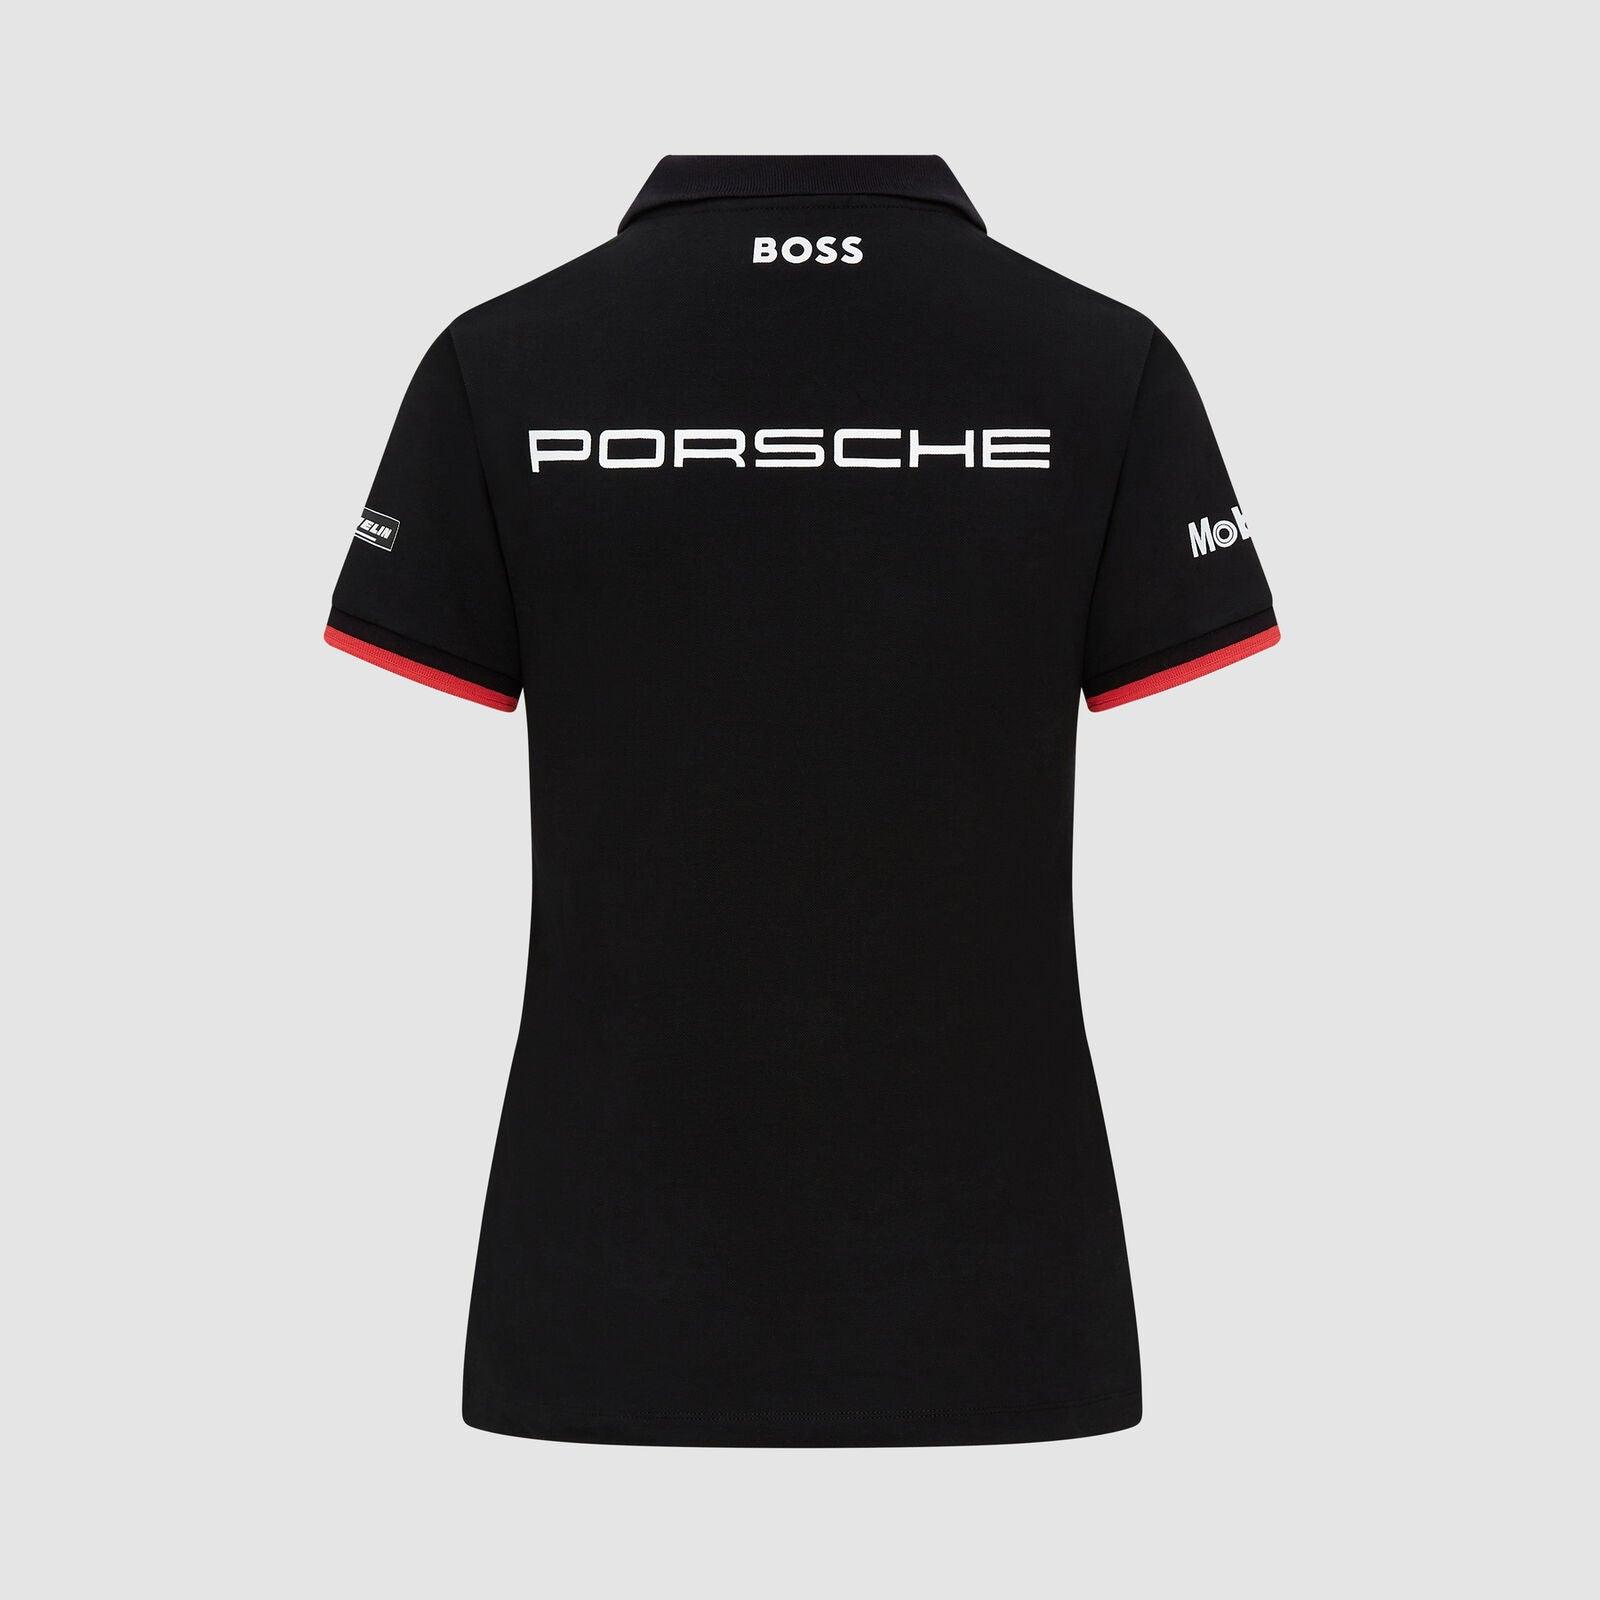 Porsche Motorsport Women's Team Polo Black - Rustle Racewears